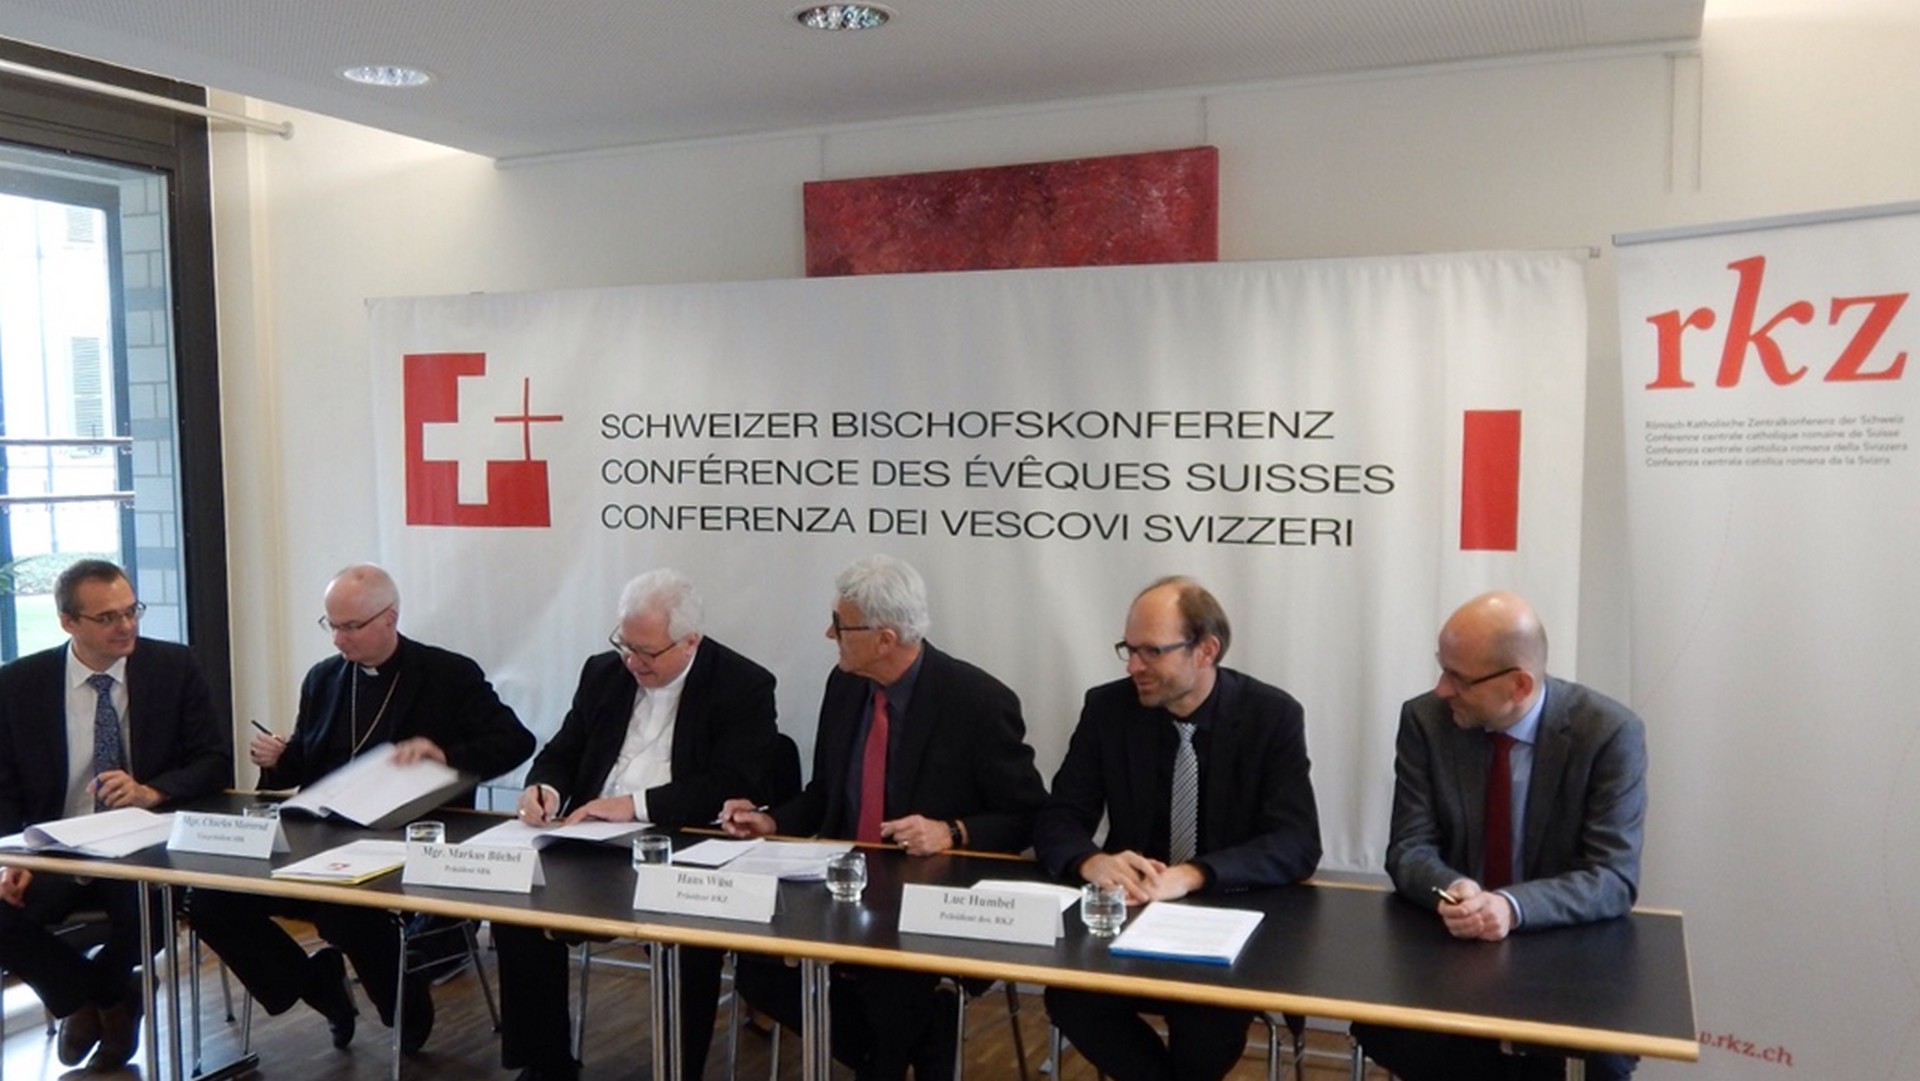 Signature de la Convention de collaboration entre la Conférence des évêques suisses (CES) et la Conférence centrale catholique romaine de Suisse (RKZ), en 2015 (Photo:  Walter Muller, CES)